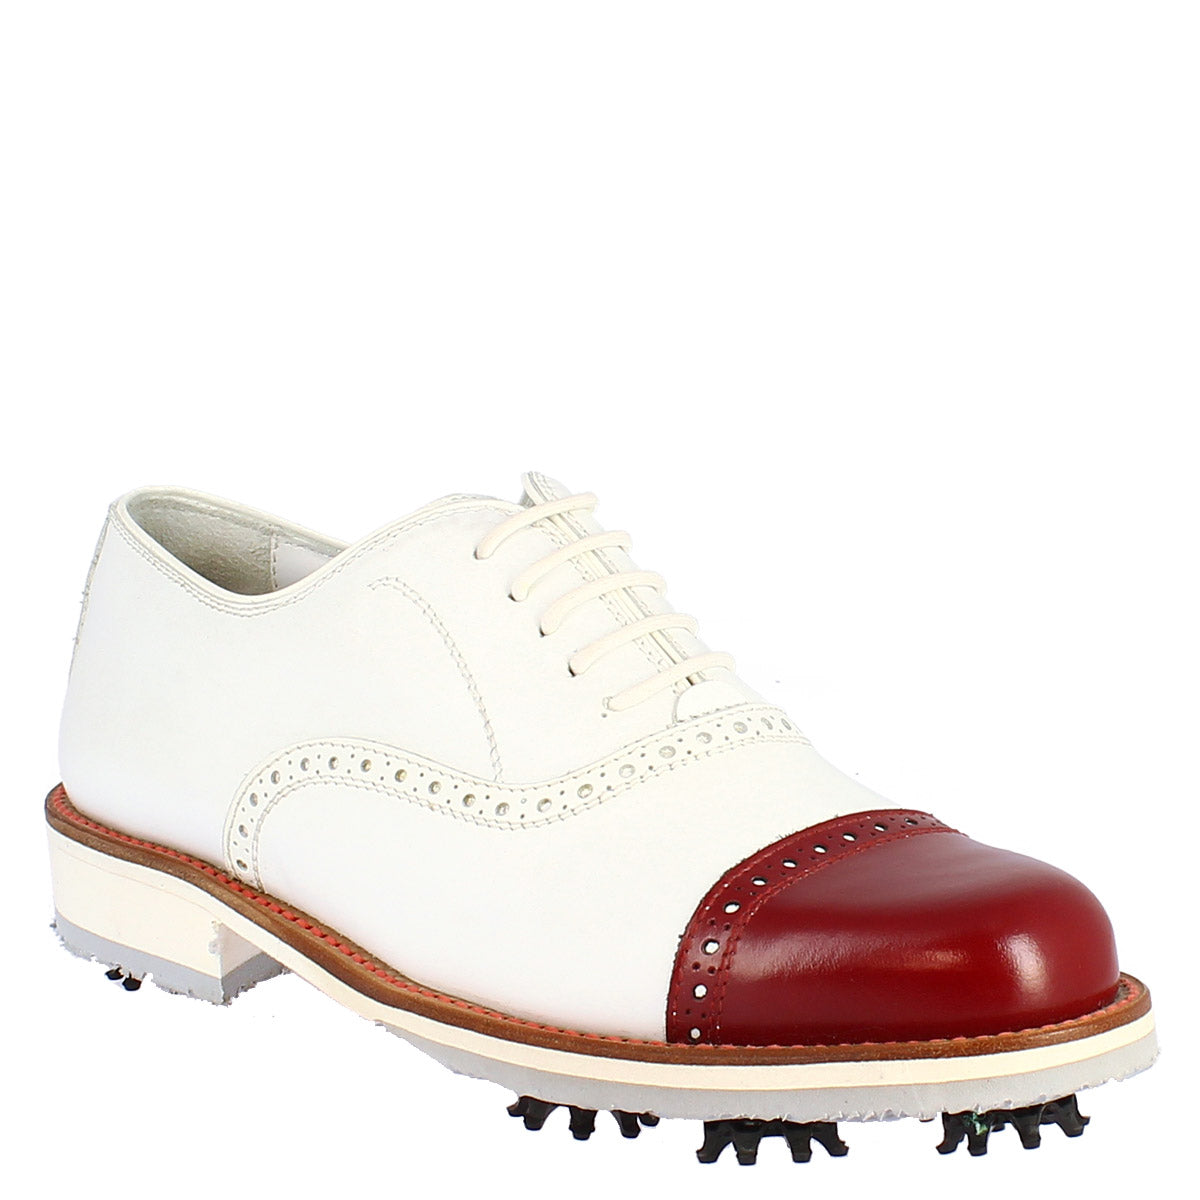 Handgefertigte Damen-Golfschuhe aus weißem Leder mit roter Zehenkappe